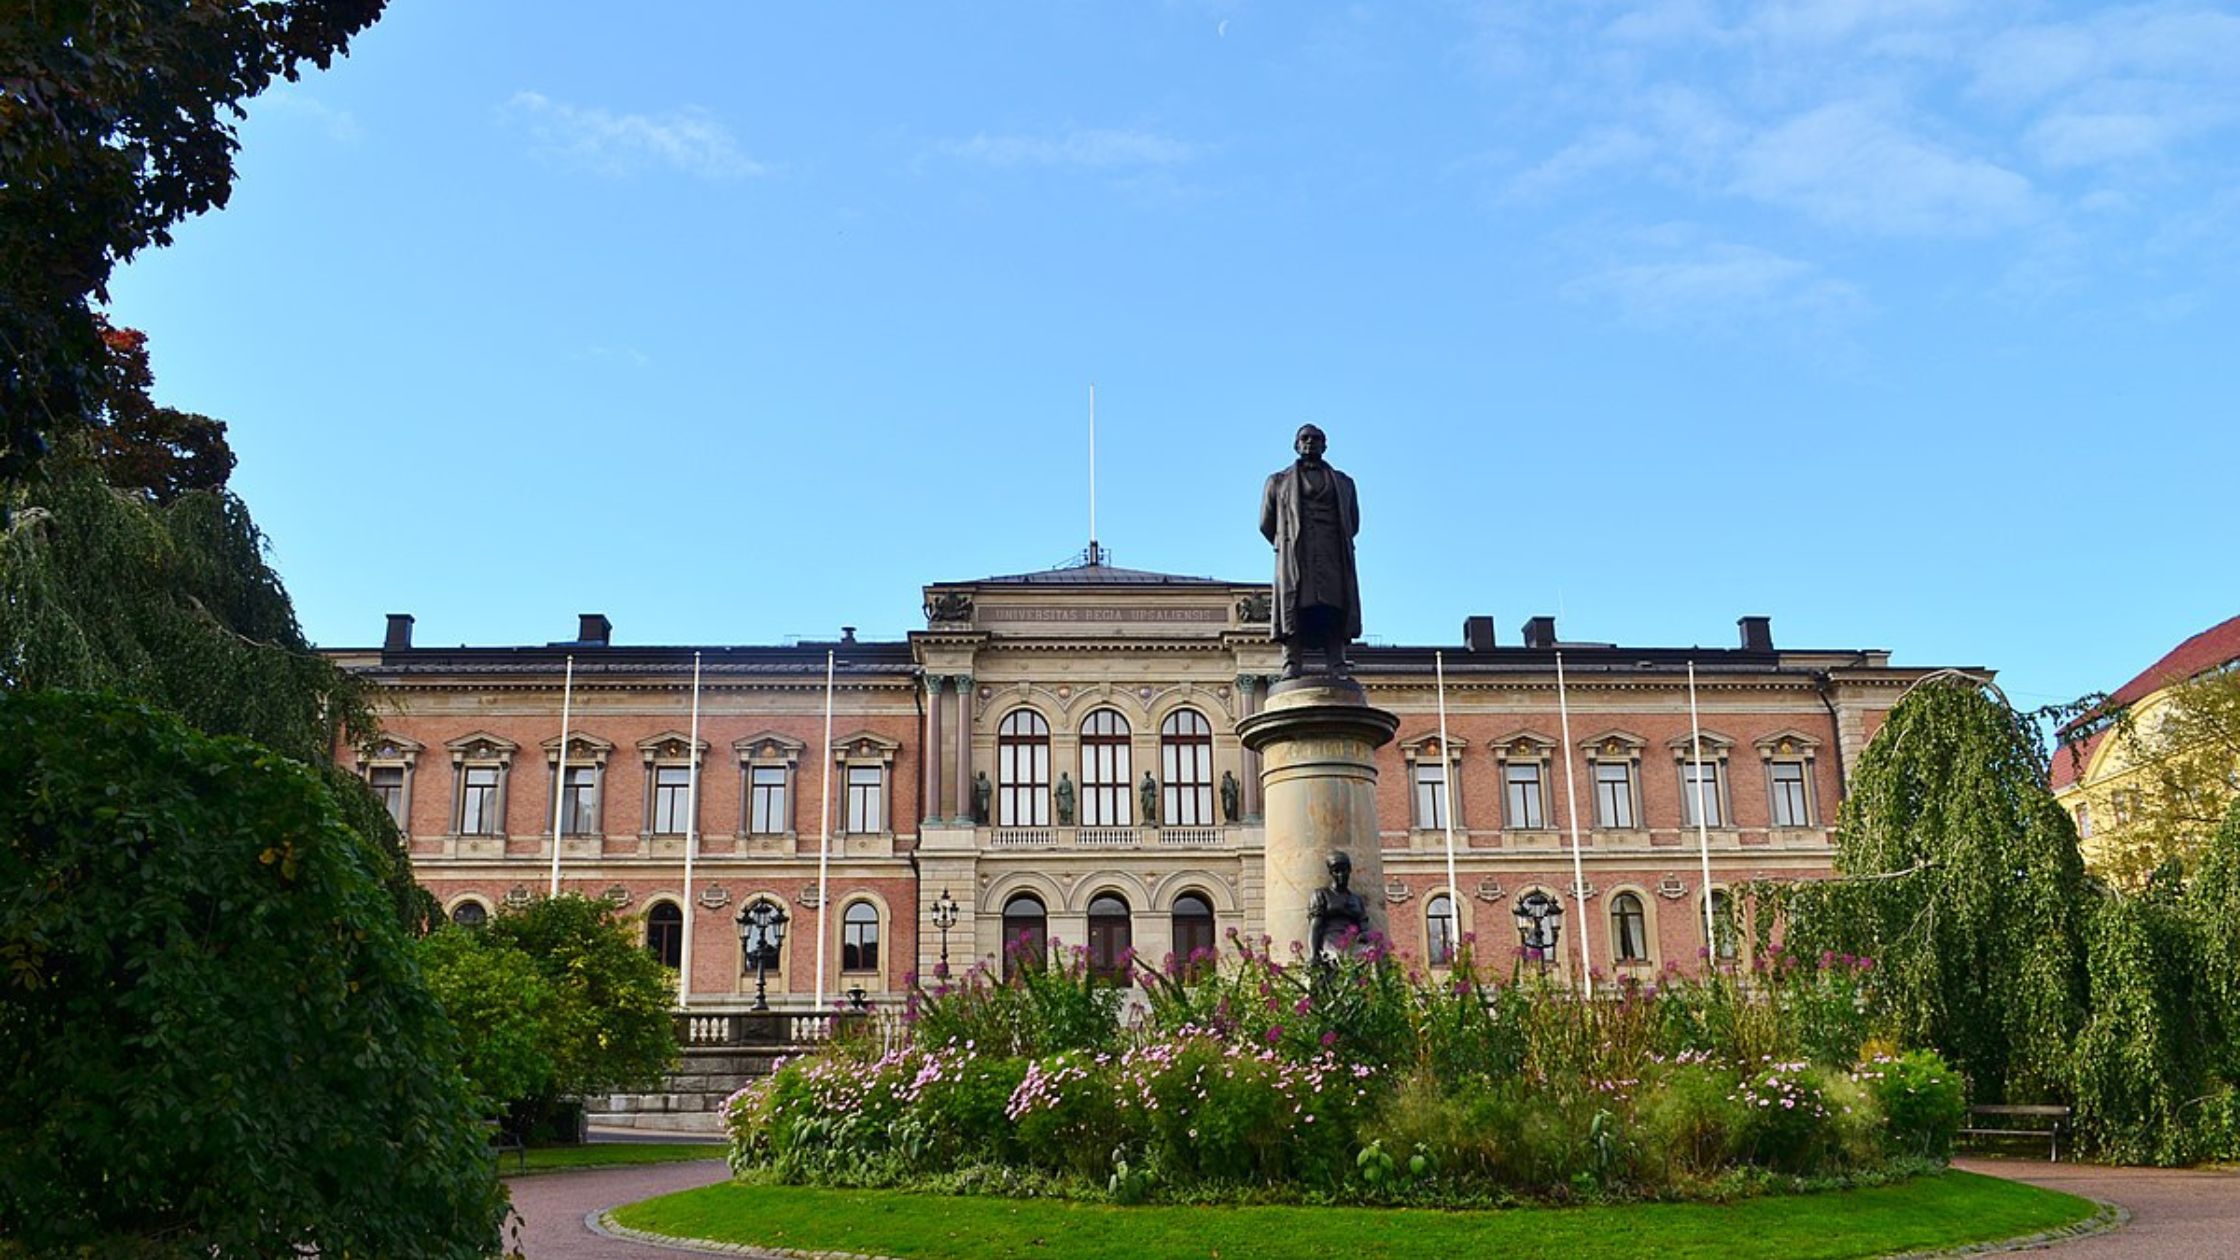 An outside view of Uppsala University.